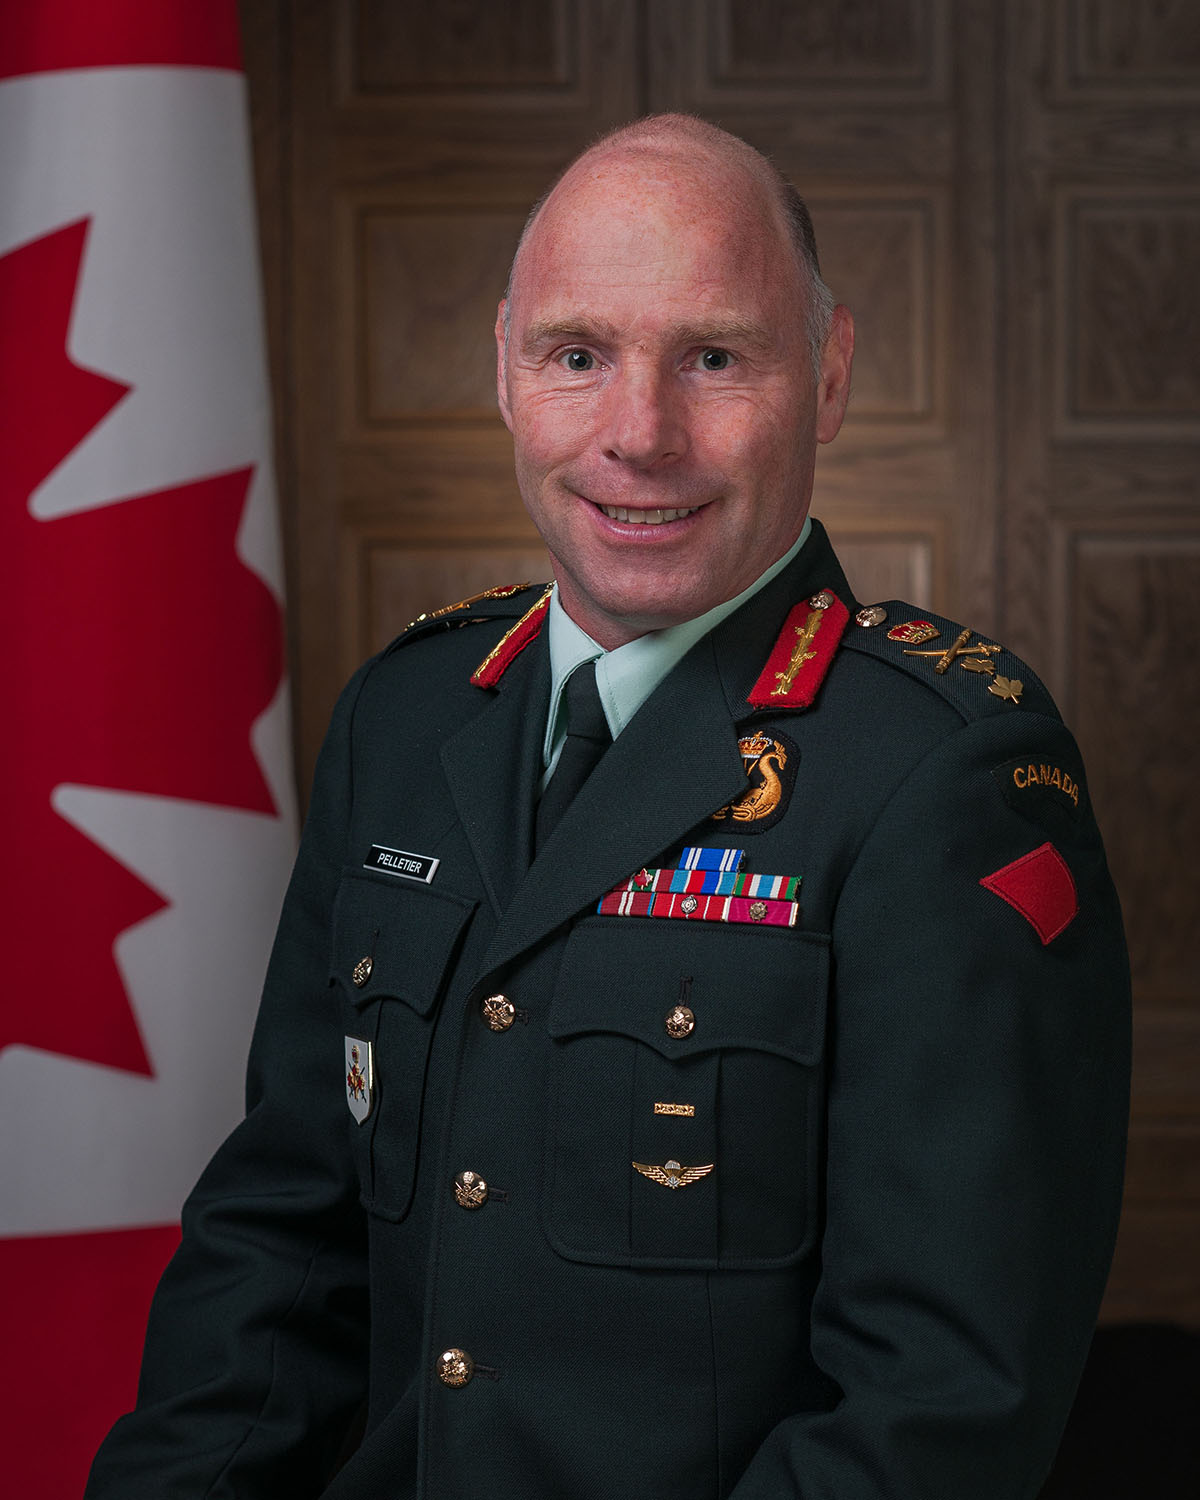 Major-Général Pelletier